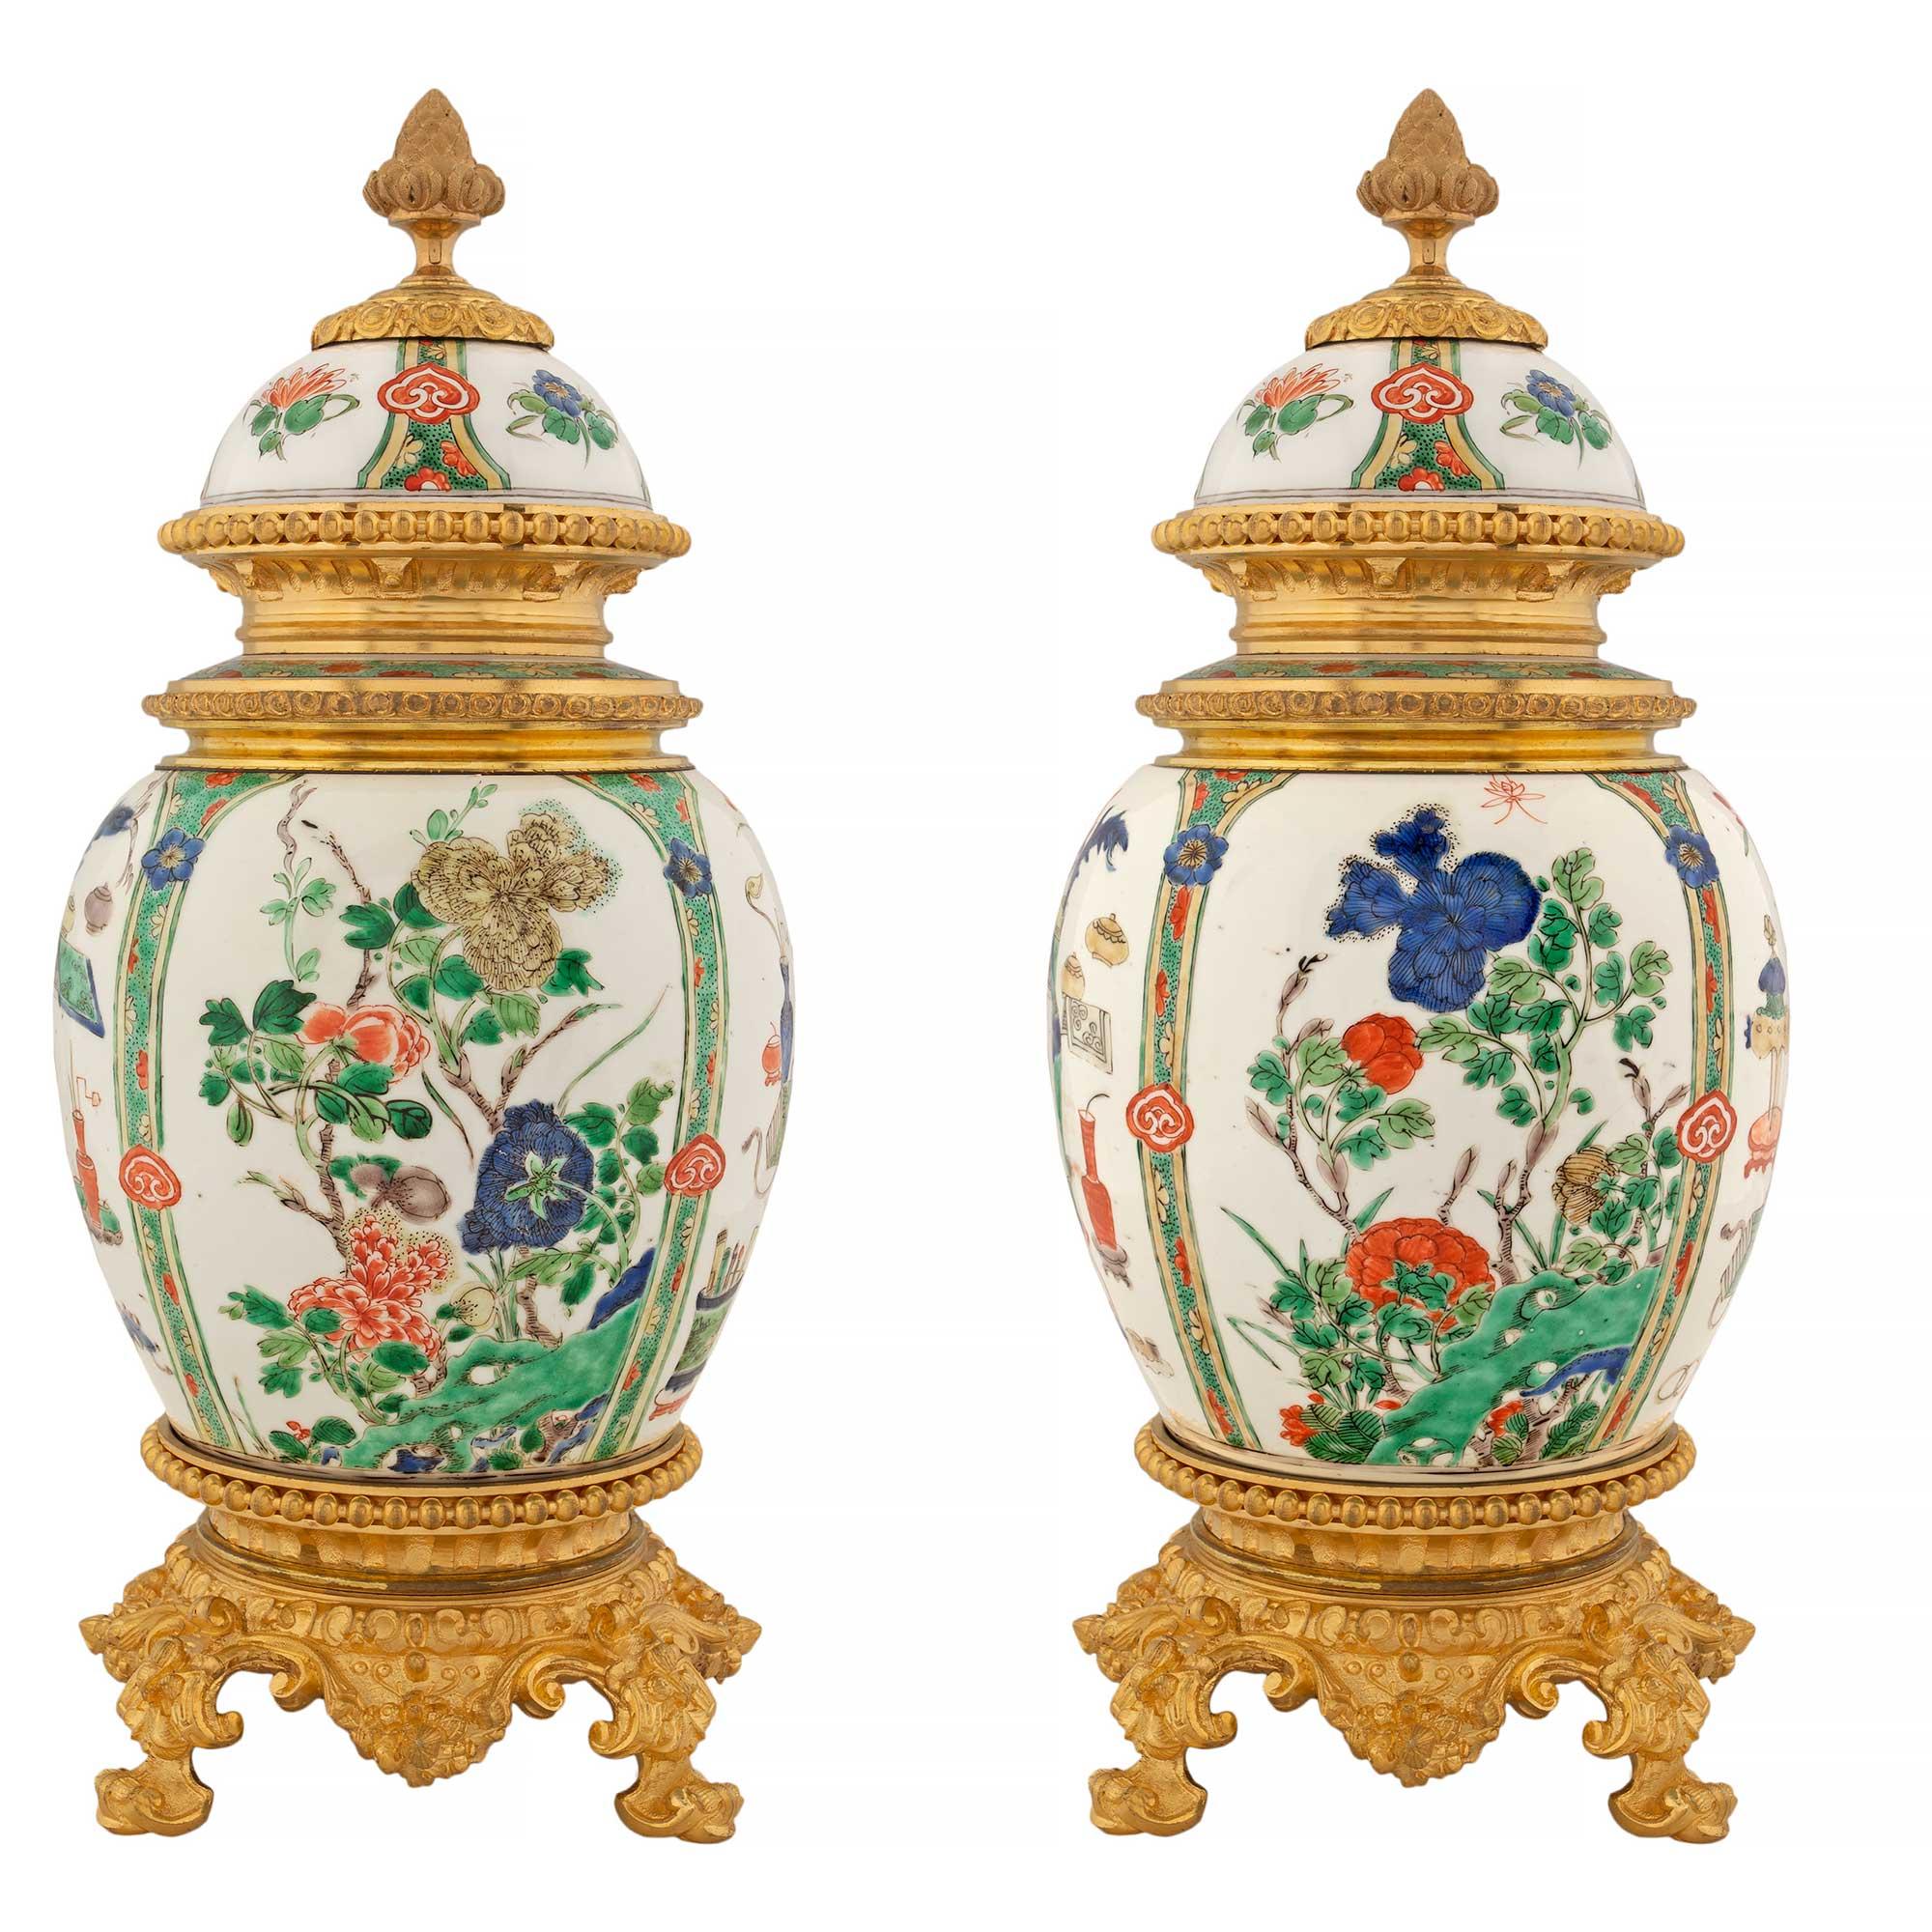 Ein sehr schönes Paar chinesischer Export-Porzellan-Urnen des 19. Jahrhunderts mit Deckel auf französischen Louis-XVI-Ormolu-Beschlägen. Jede Urne steht auf einem runden Ormolu-Sockel mit geschwungenen Stützen unter einem eleganten Perlenband. Oben